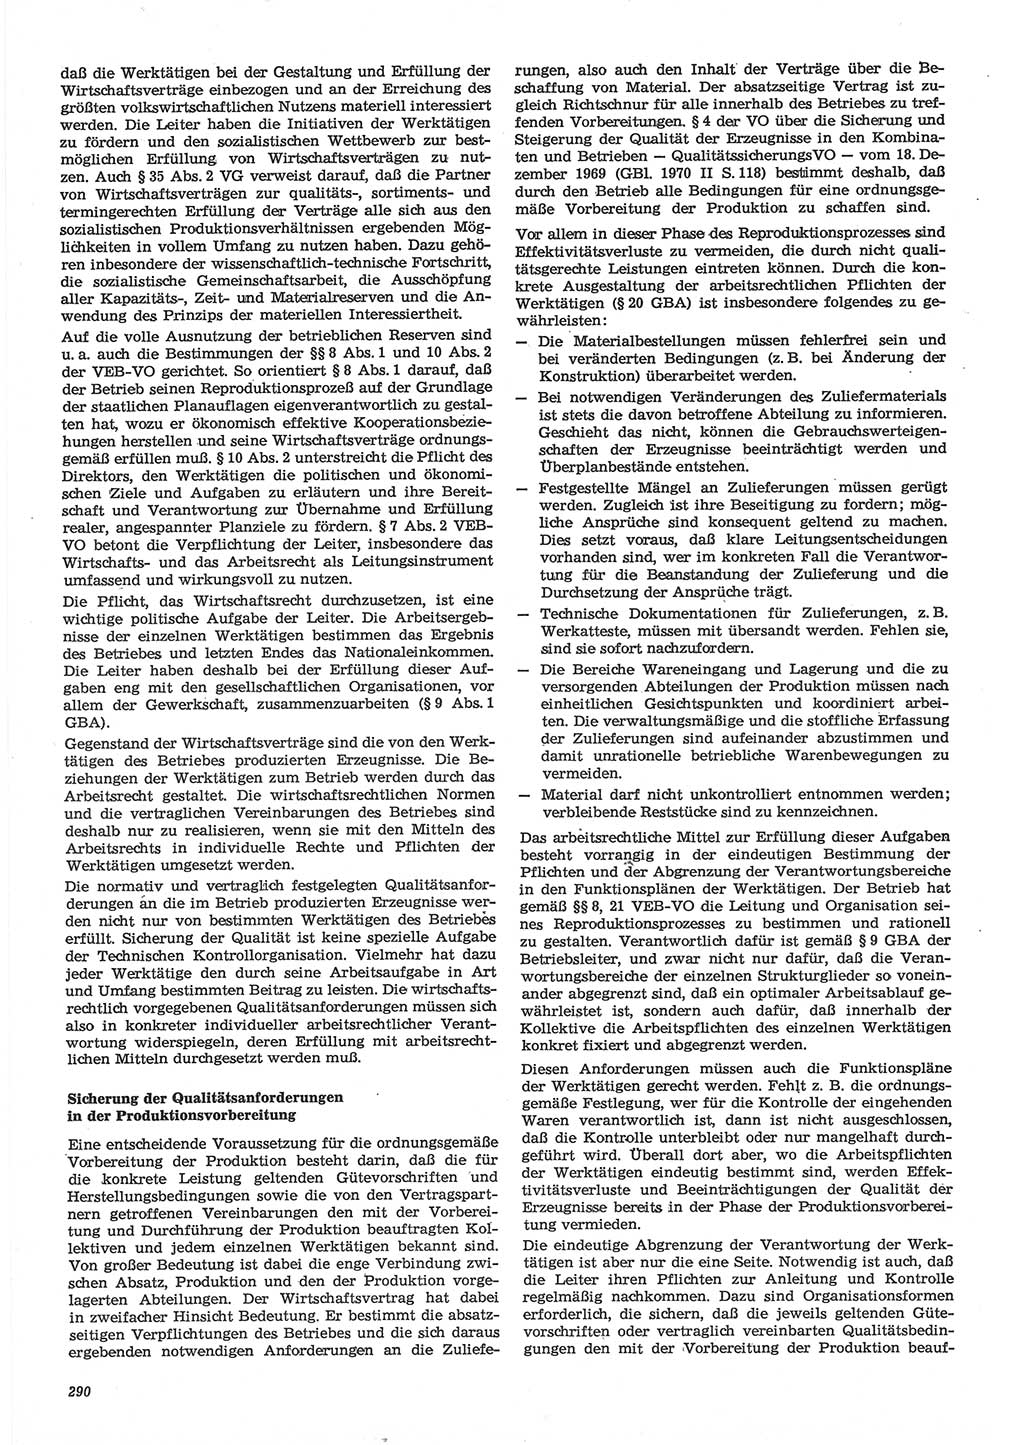 Neue Justiz (NJ), Zeitschrift für Recht und Rechtswissenschaft-Zeitschrift, sozialistisches Recht und Gesetzlichkeit, 31. Jahrgang 1977, Seite 290 (NJ DDR 1977, S. 290)